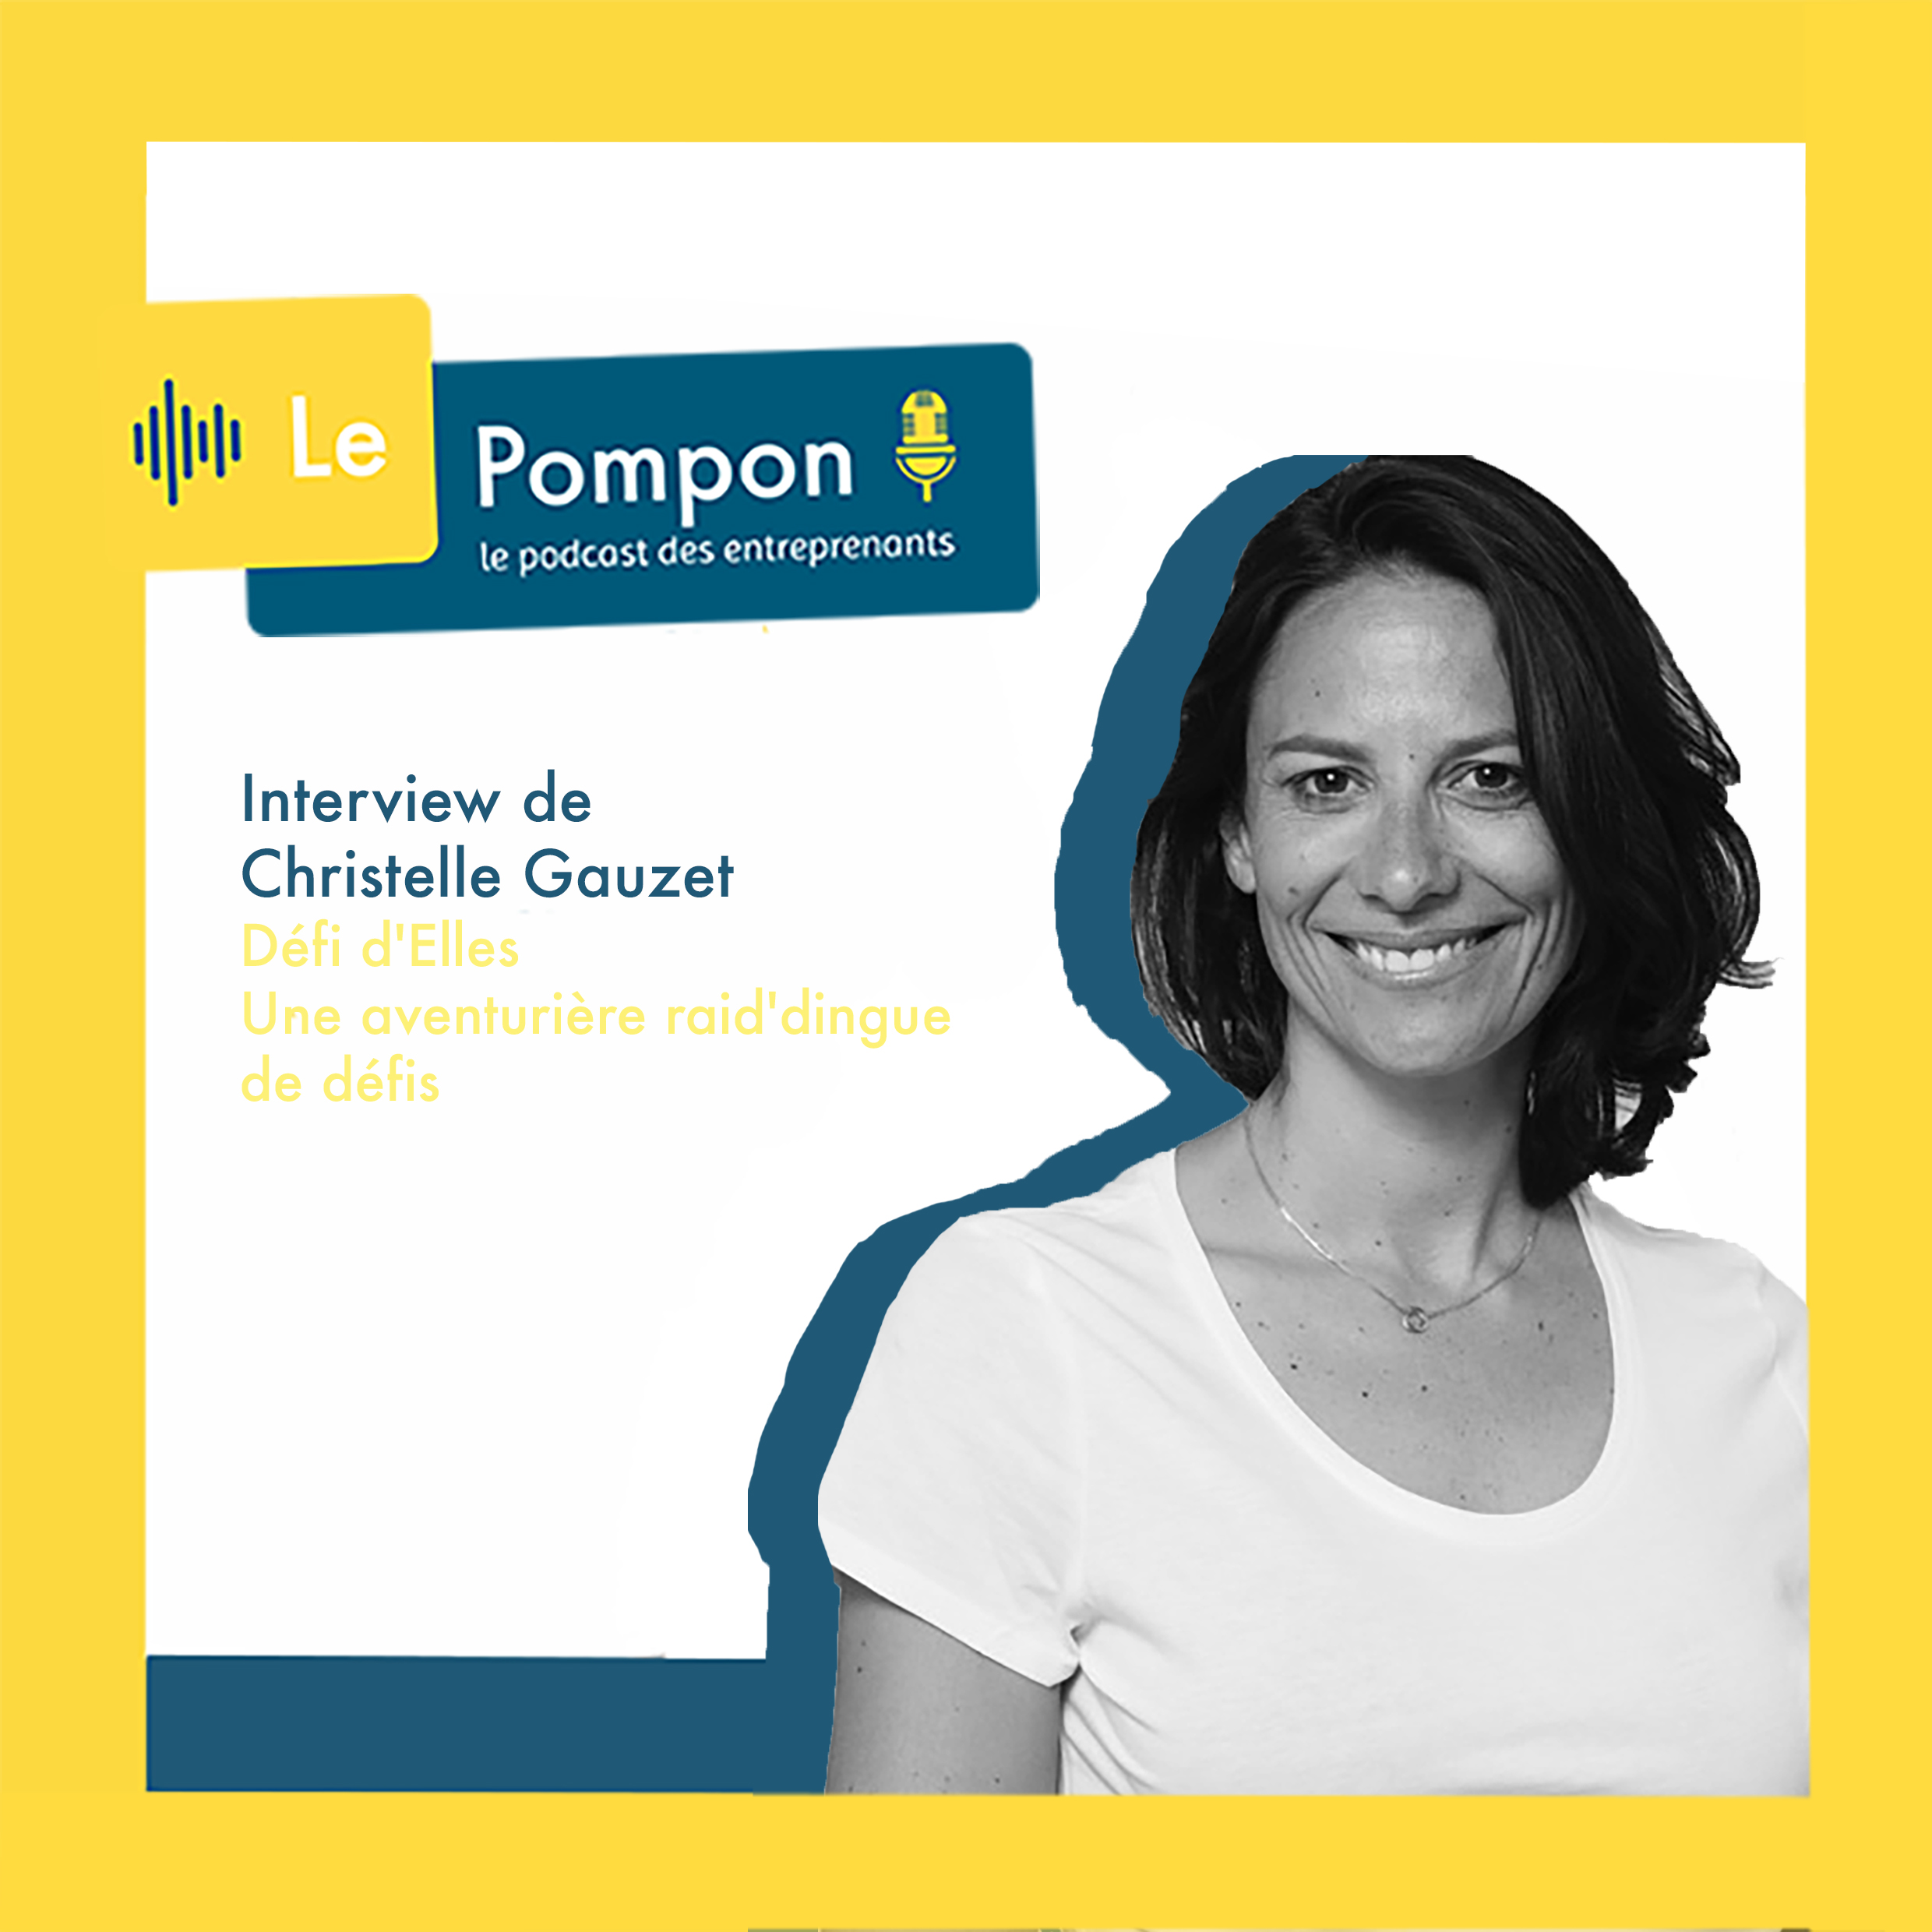 Illustration de l'épisode 24 du Podcast Le Pompon : Christelle Gauzet, Défi d'Elles